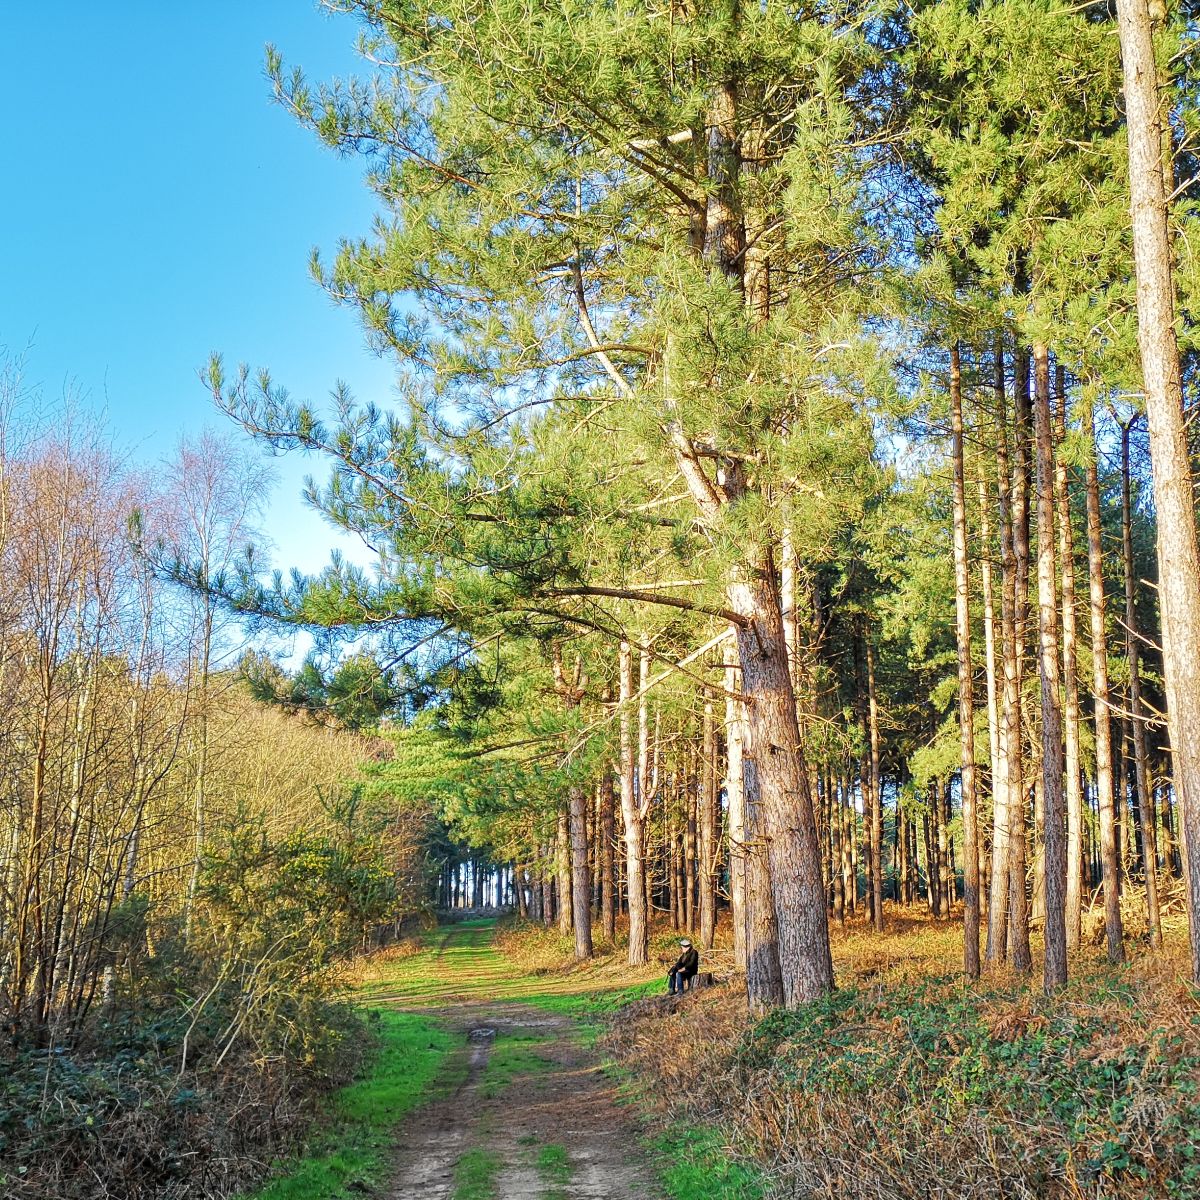 Nature reserves around Leiston-cum-Sizewell Suffolk